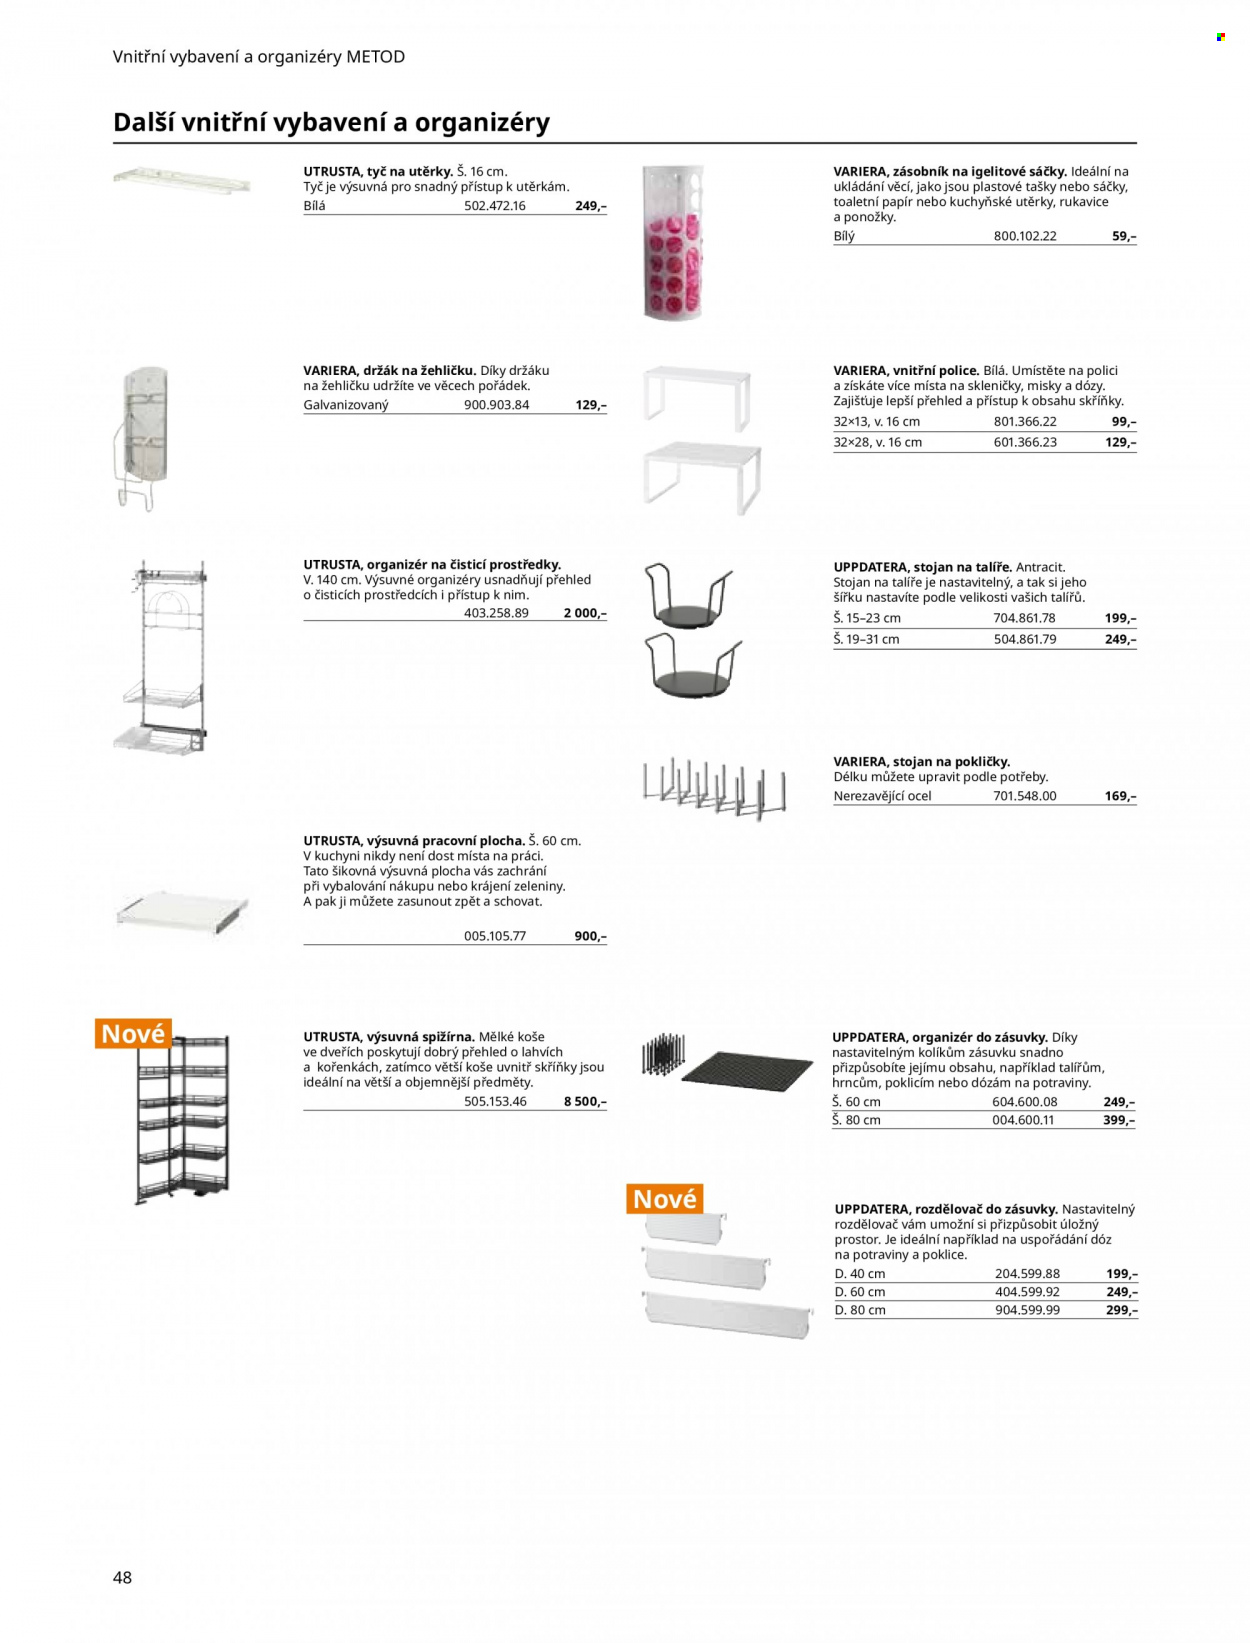 Leták IKEA - Produkty v akci - organizér, sklenice, talíř, miska, zásobník, dóza, Metod, police, organizér do zásuvky, rozdělovač, rukavice, taška. Strana 48.